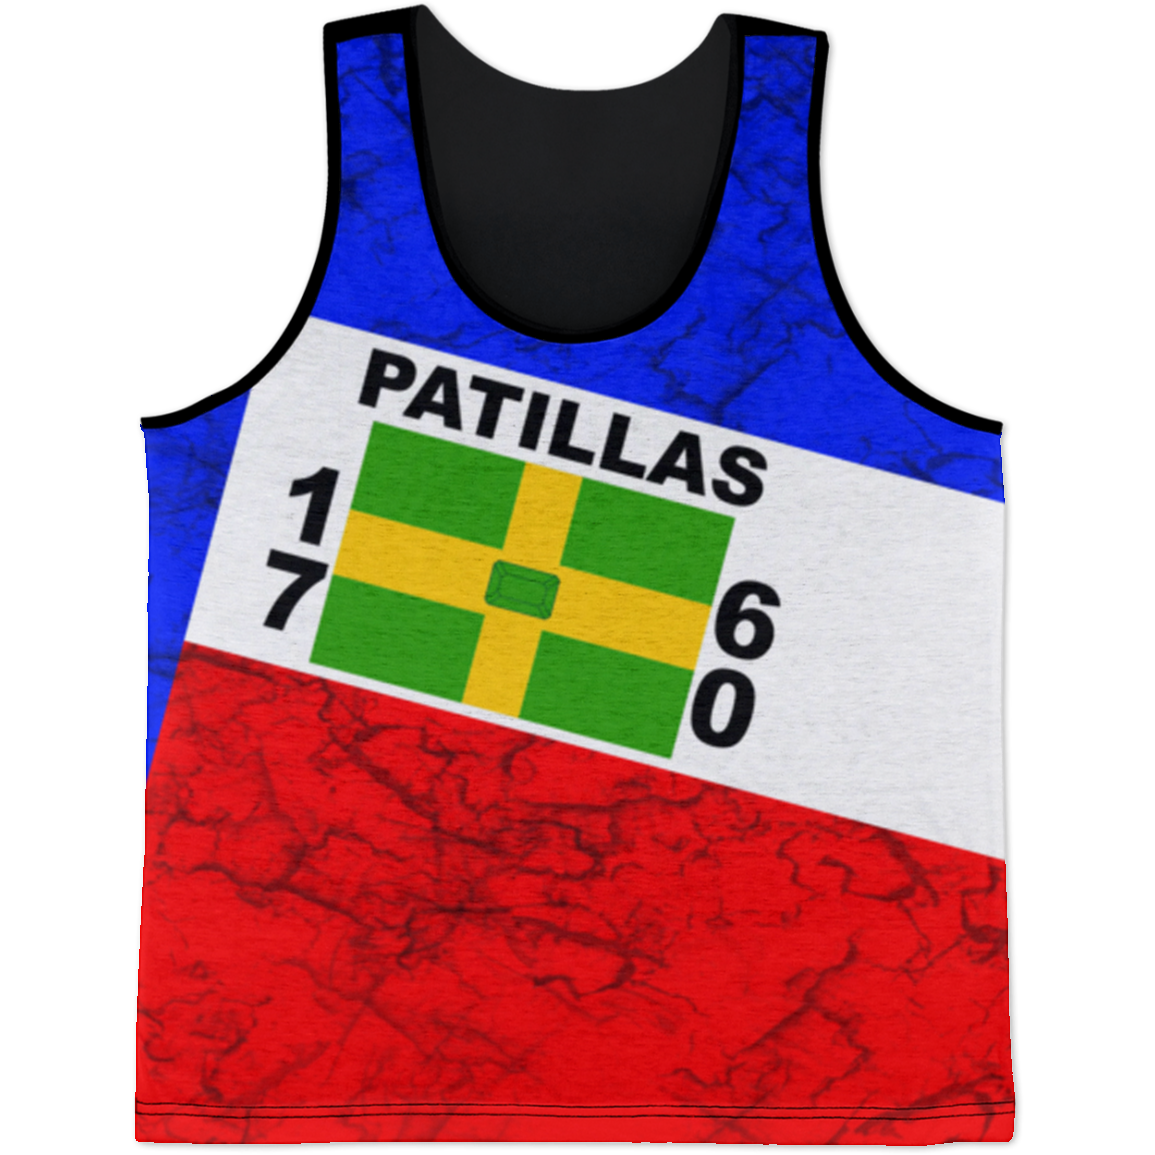 Patillas Tank Top - Puerto Rican Pride